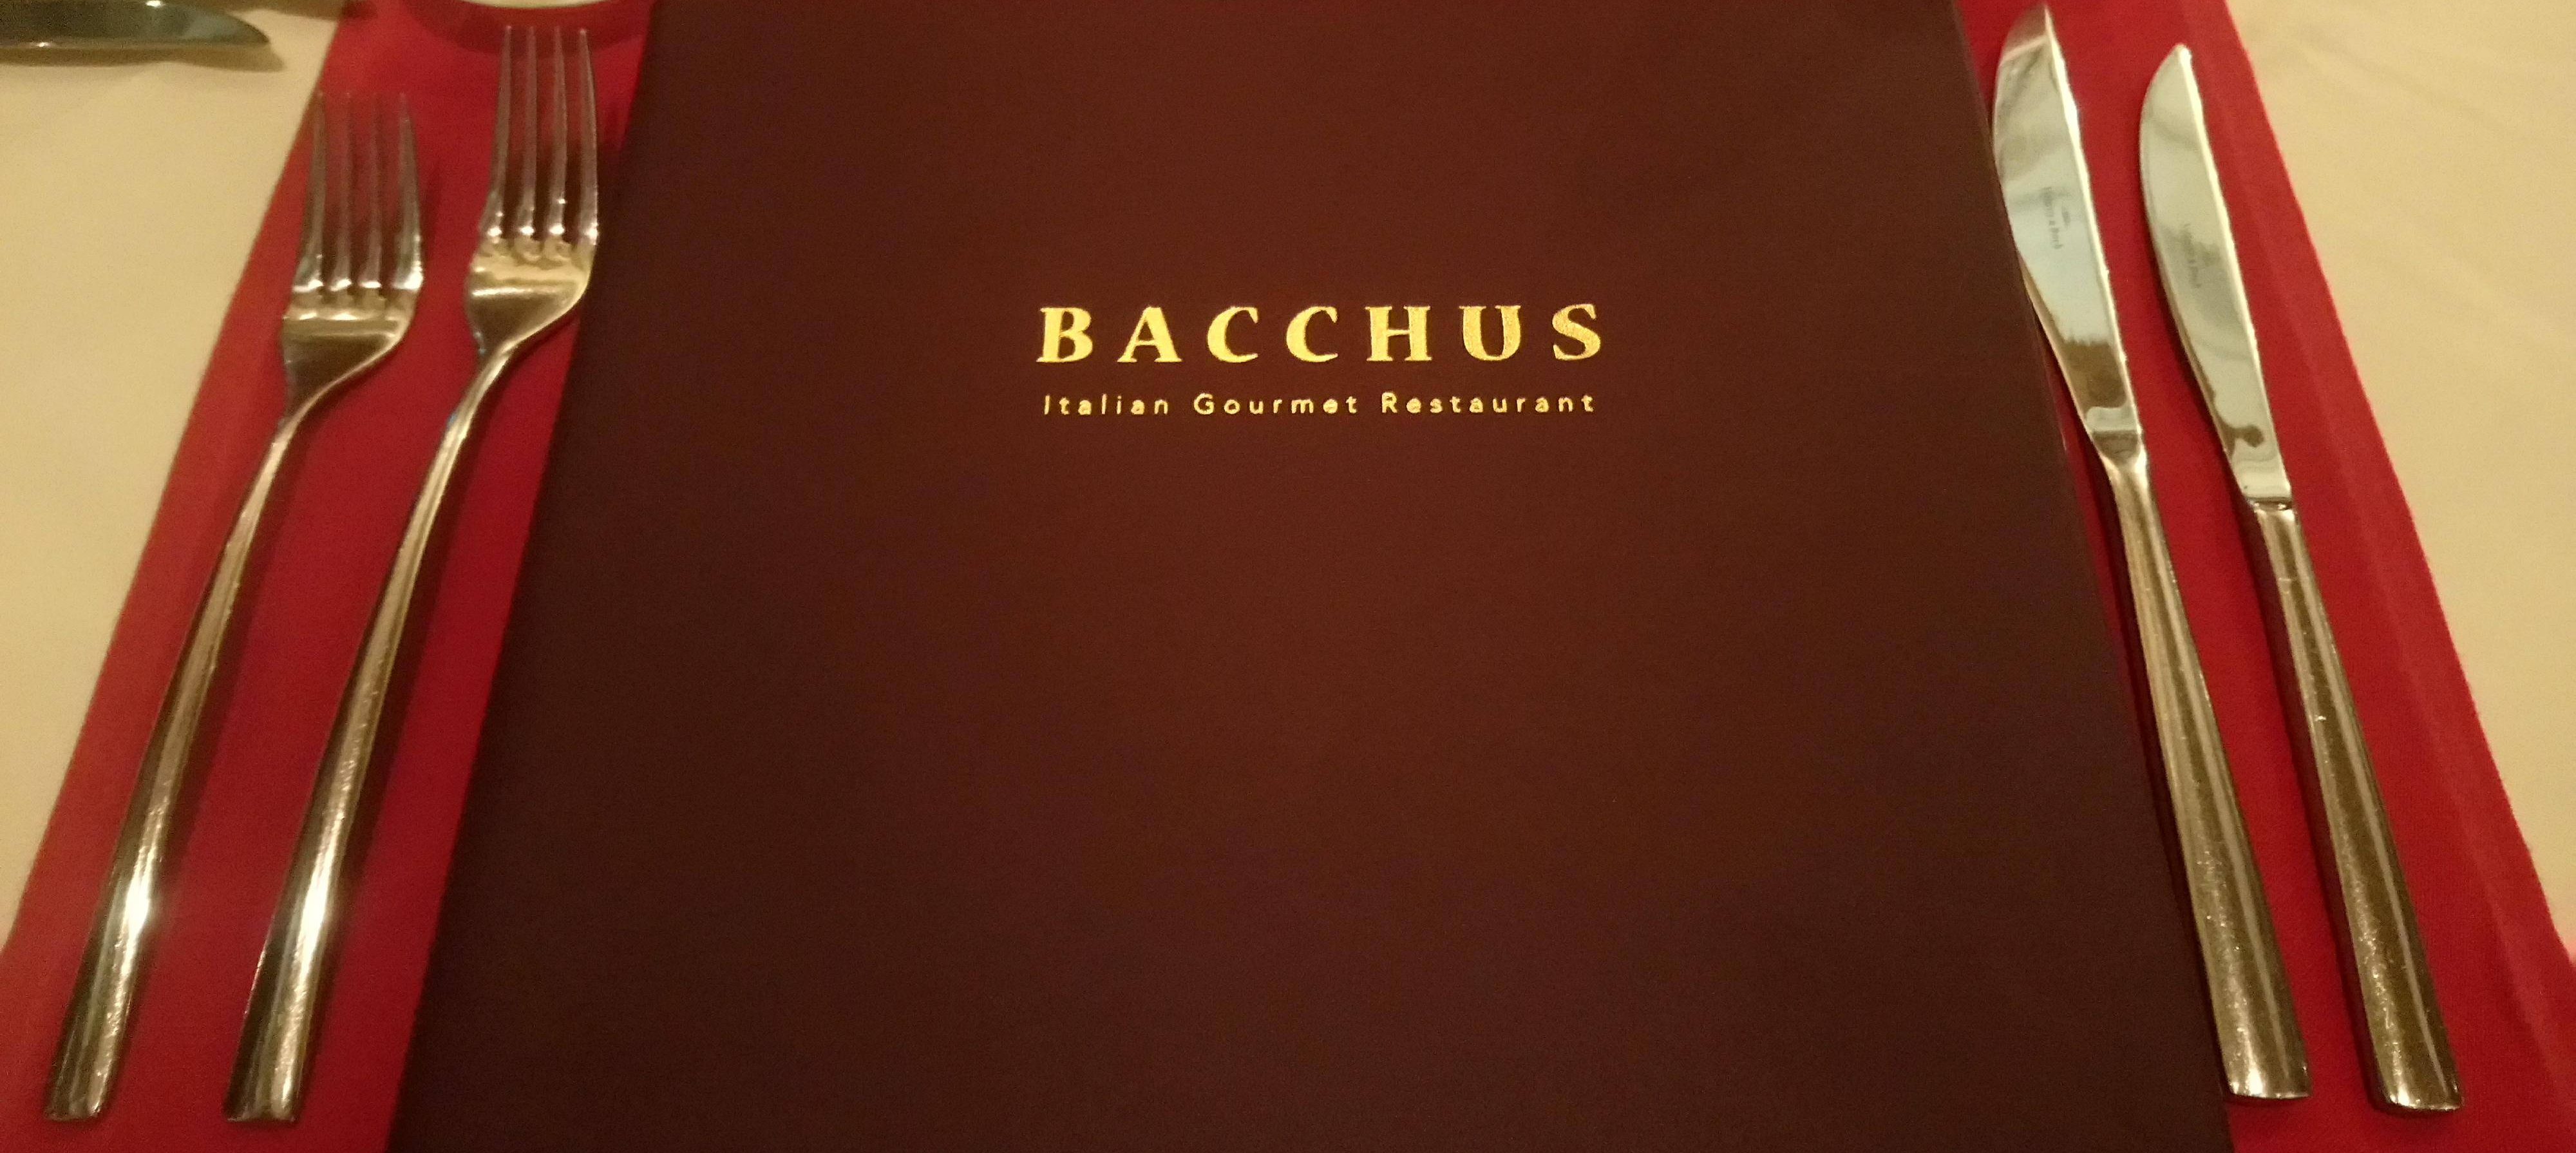 Bacchus Restaurant Menu at Columbia Beach Resort in Cyprus